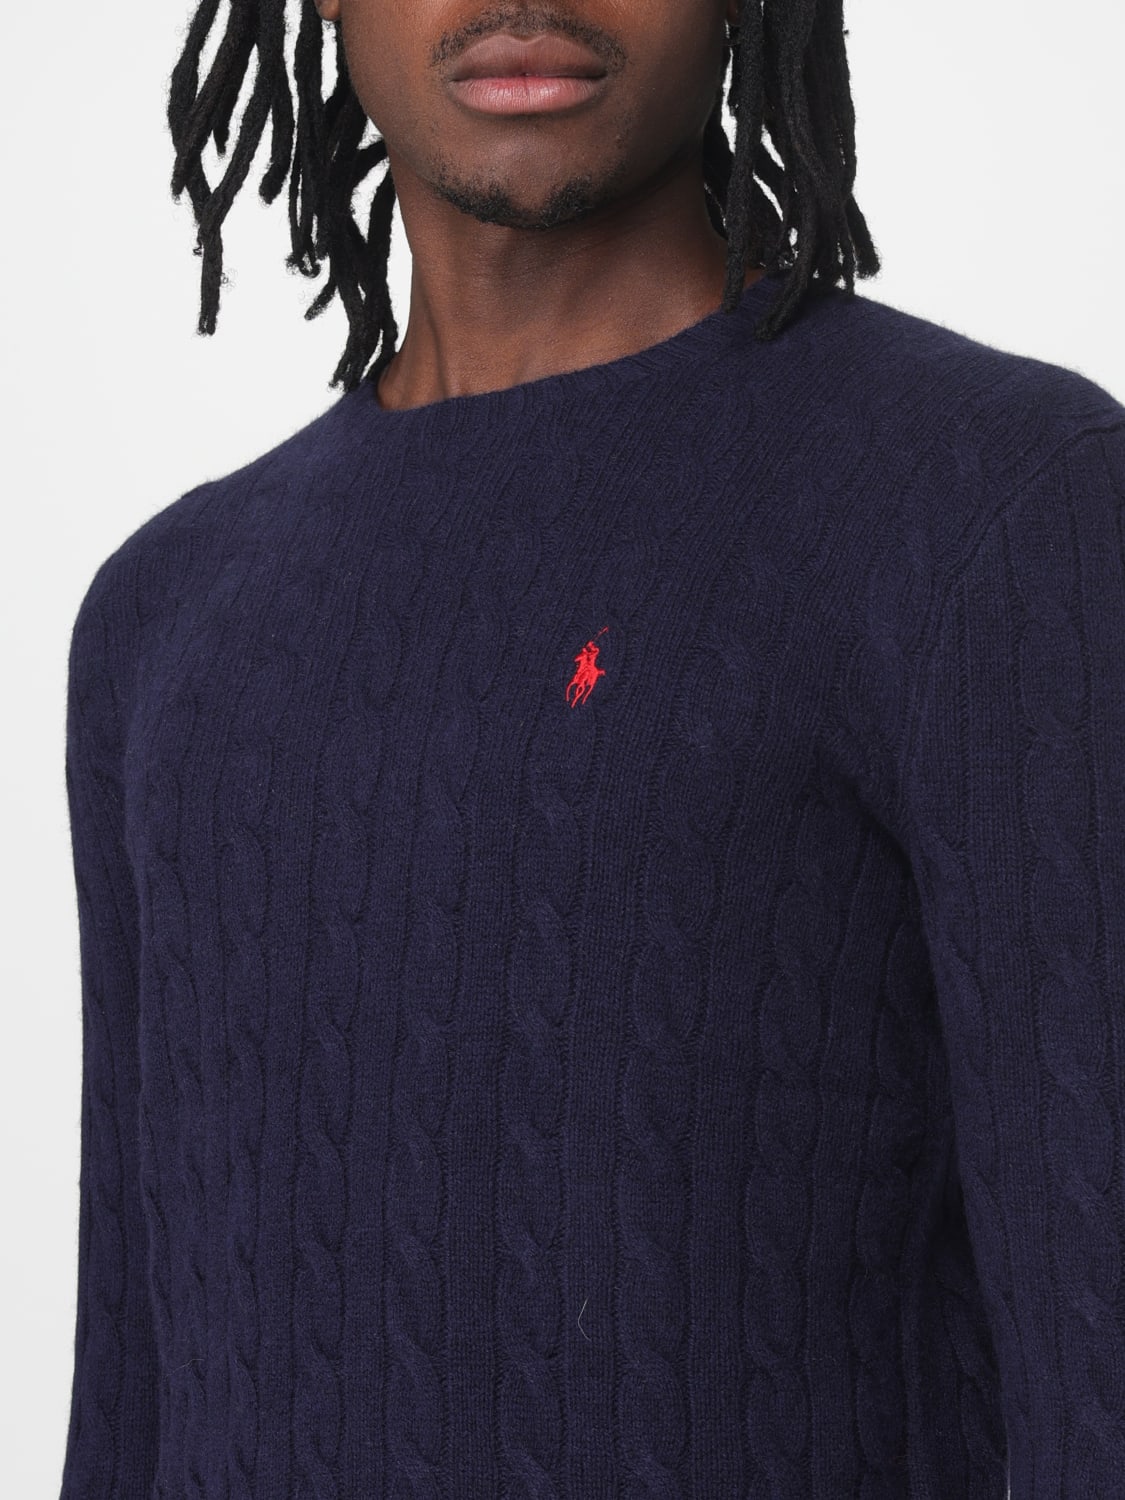 POLO RALPH LAUREN: sweater for man - Navy | Polo Ralph Lauren sweater ...